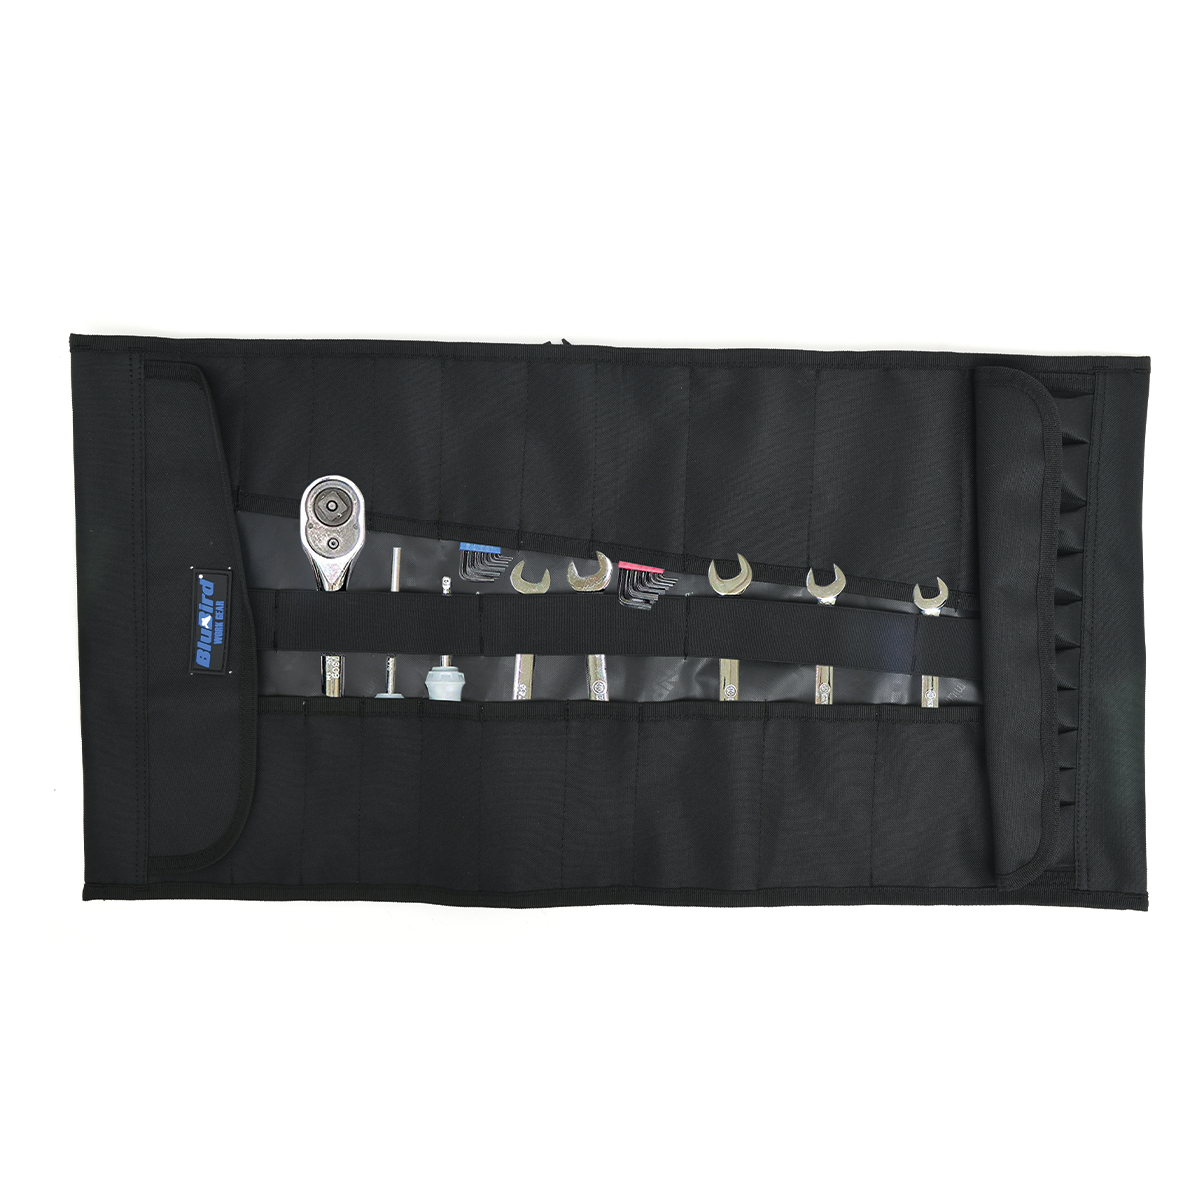 BluBird Work Gear Multi pocket Tool Roll Organizer with 32 Pockets